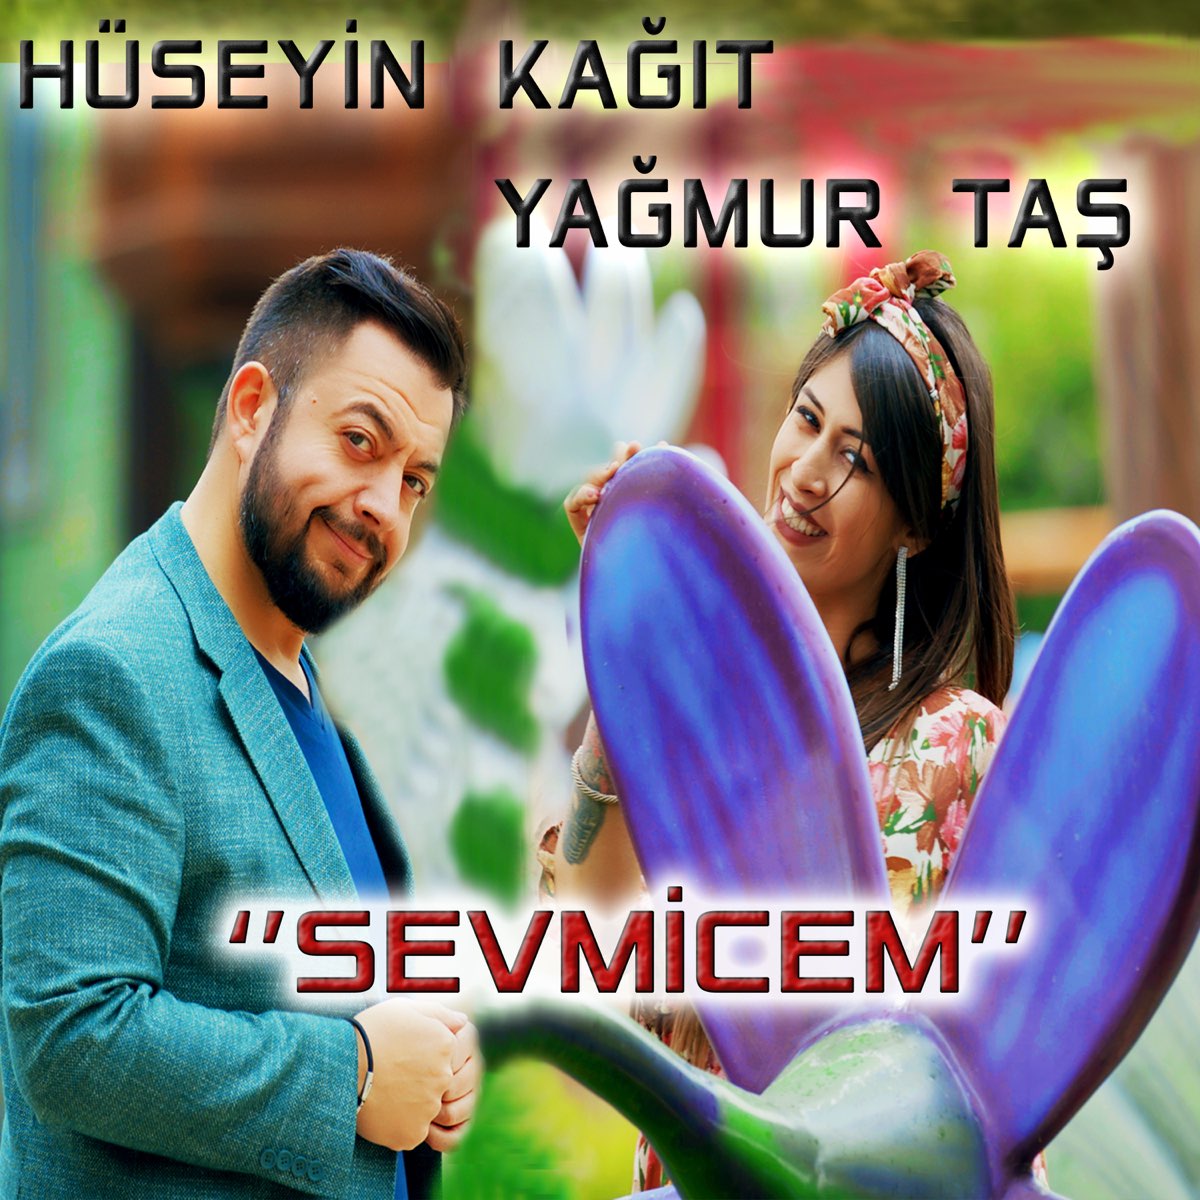 Sevmicem - Single - Album by Yağmur Taş & Hüseyin Kağıt - Apple Music